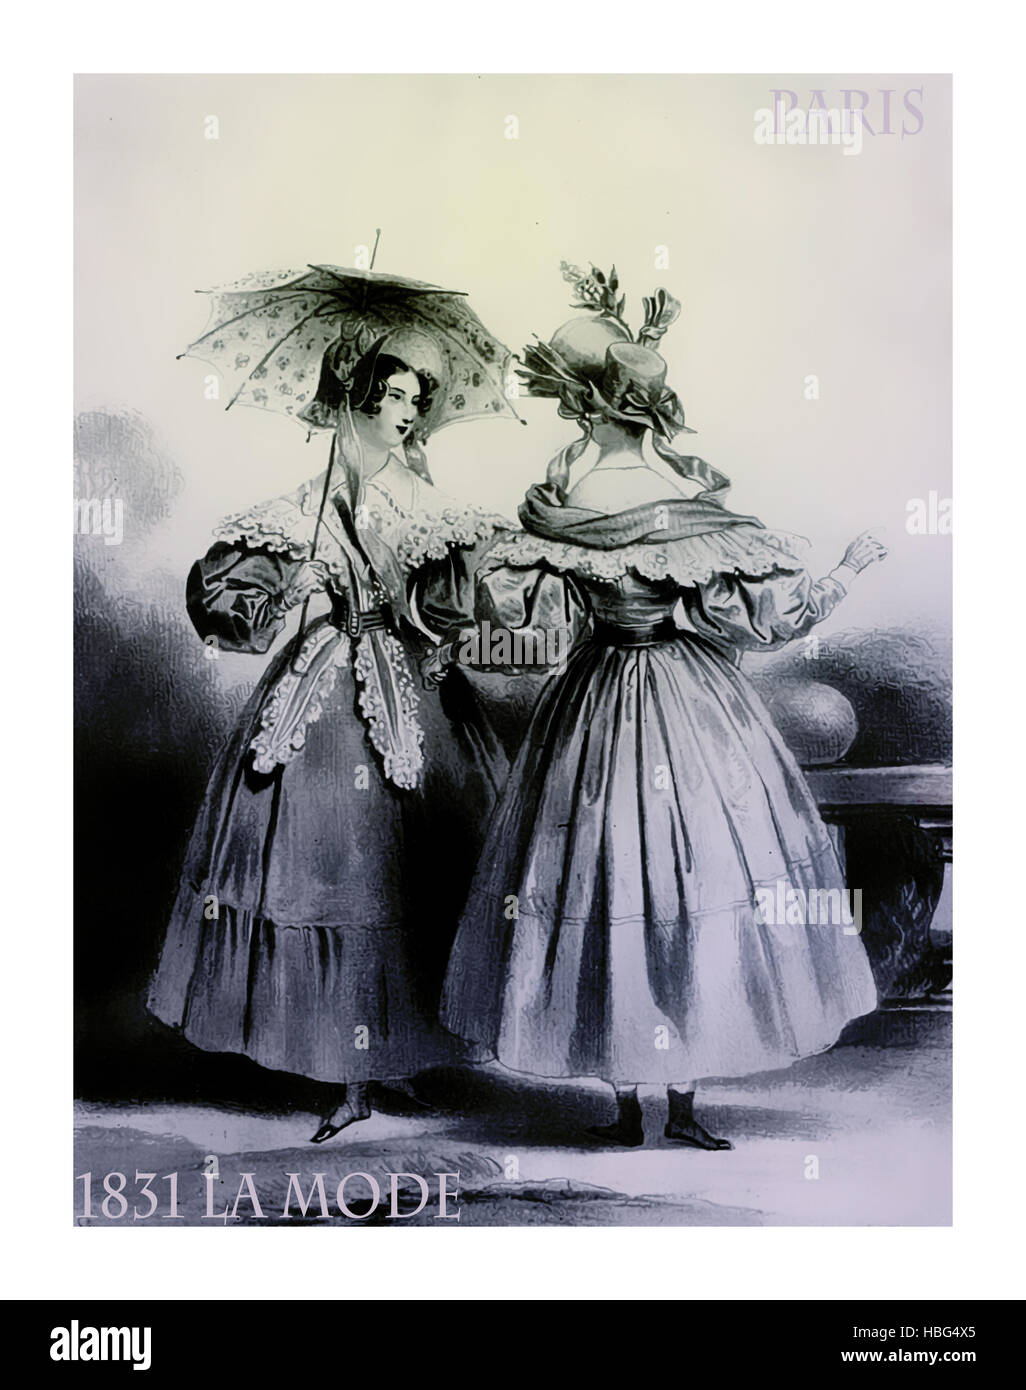 1831, le magazine français de la mode La Mode présente deux dames debout chat en plein air avec fantaisie et chiffons tranquillement parasol Banque D'Images